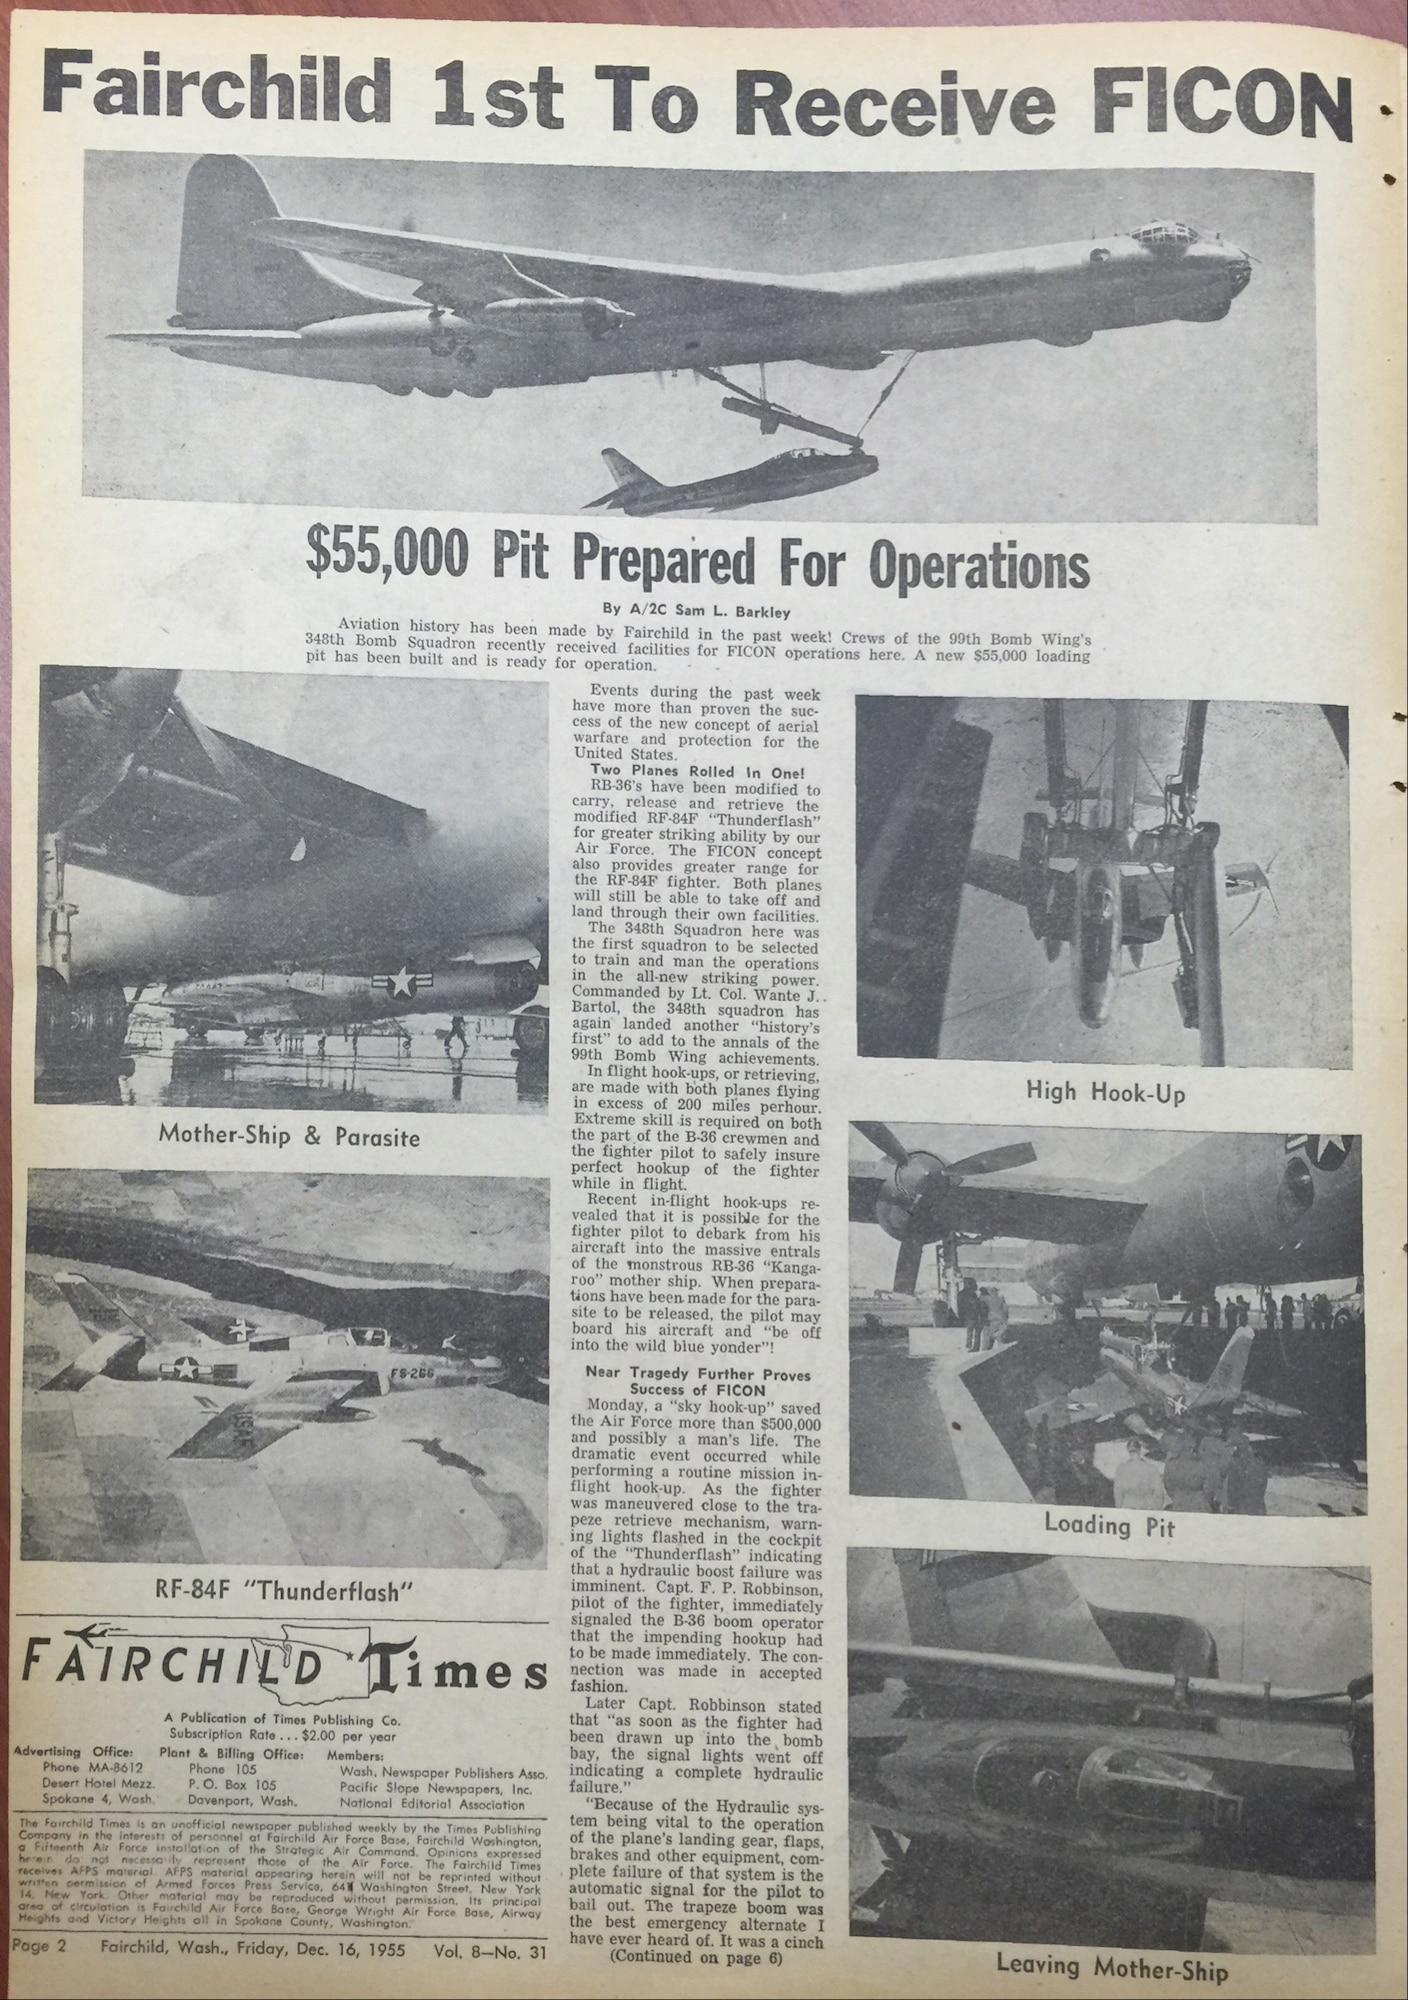 Fairchild Times, Dec. 16, 1956. (U.S. Air Force photo)